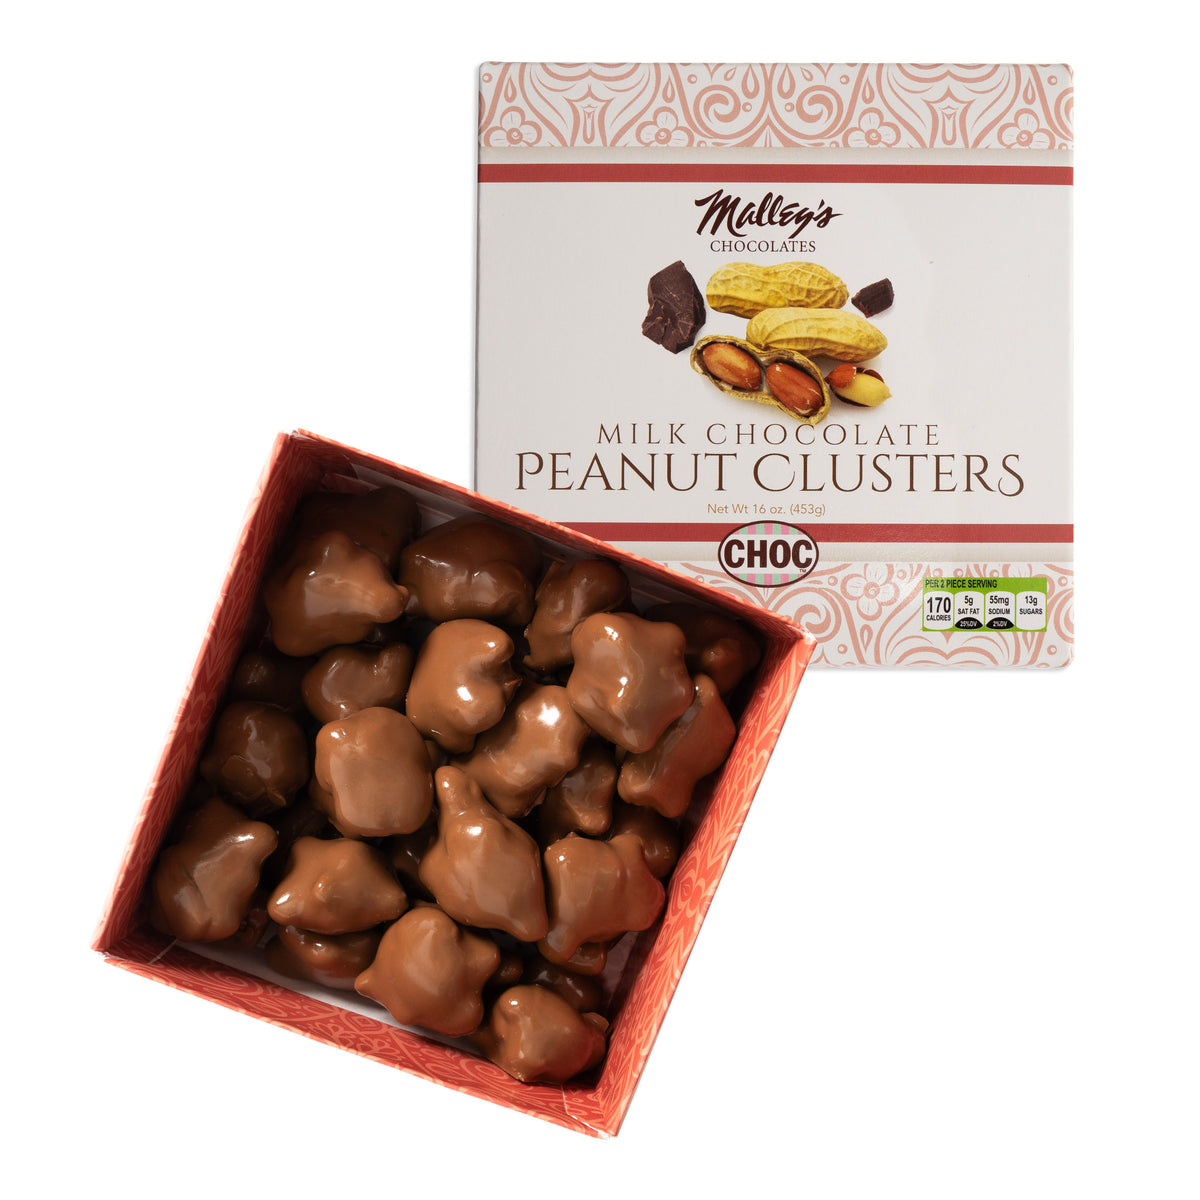 Peanut Clusters